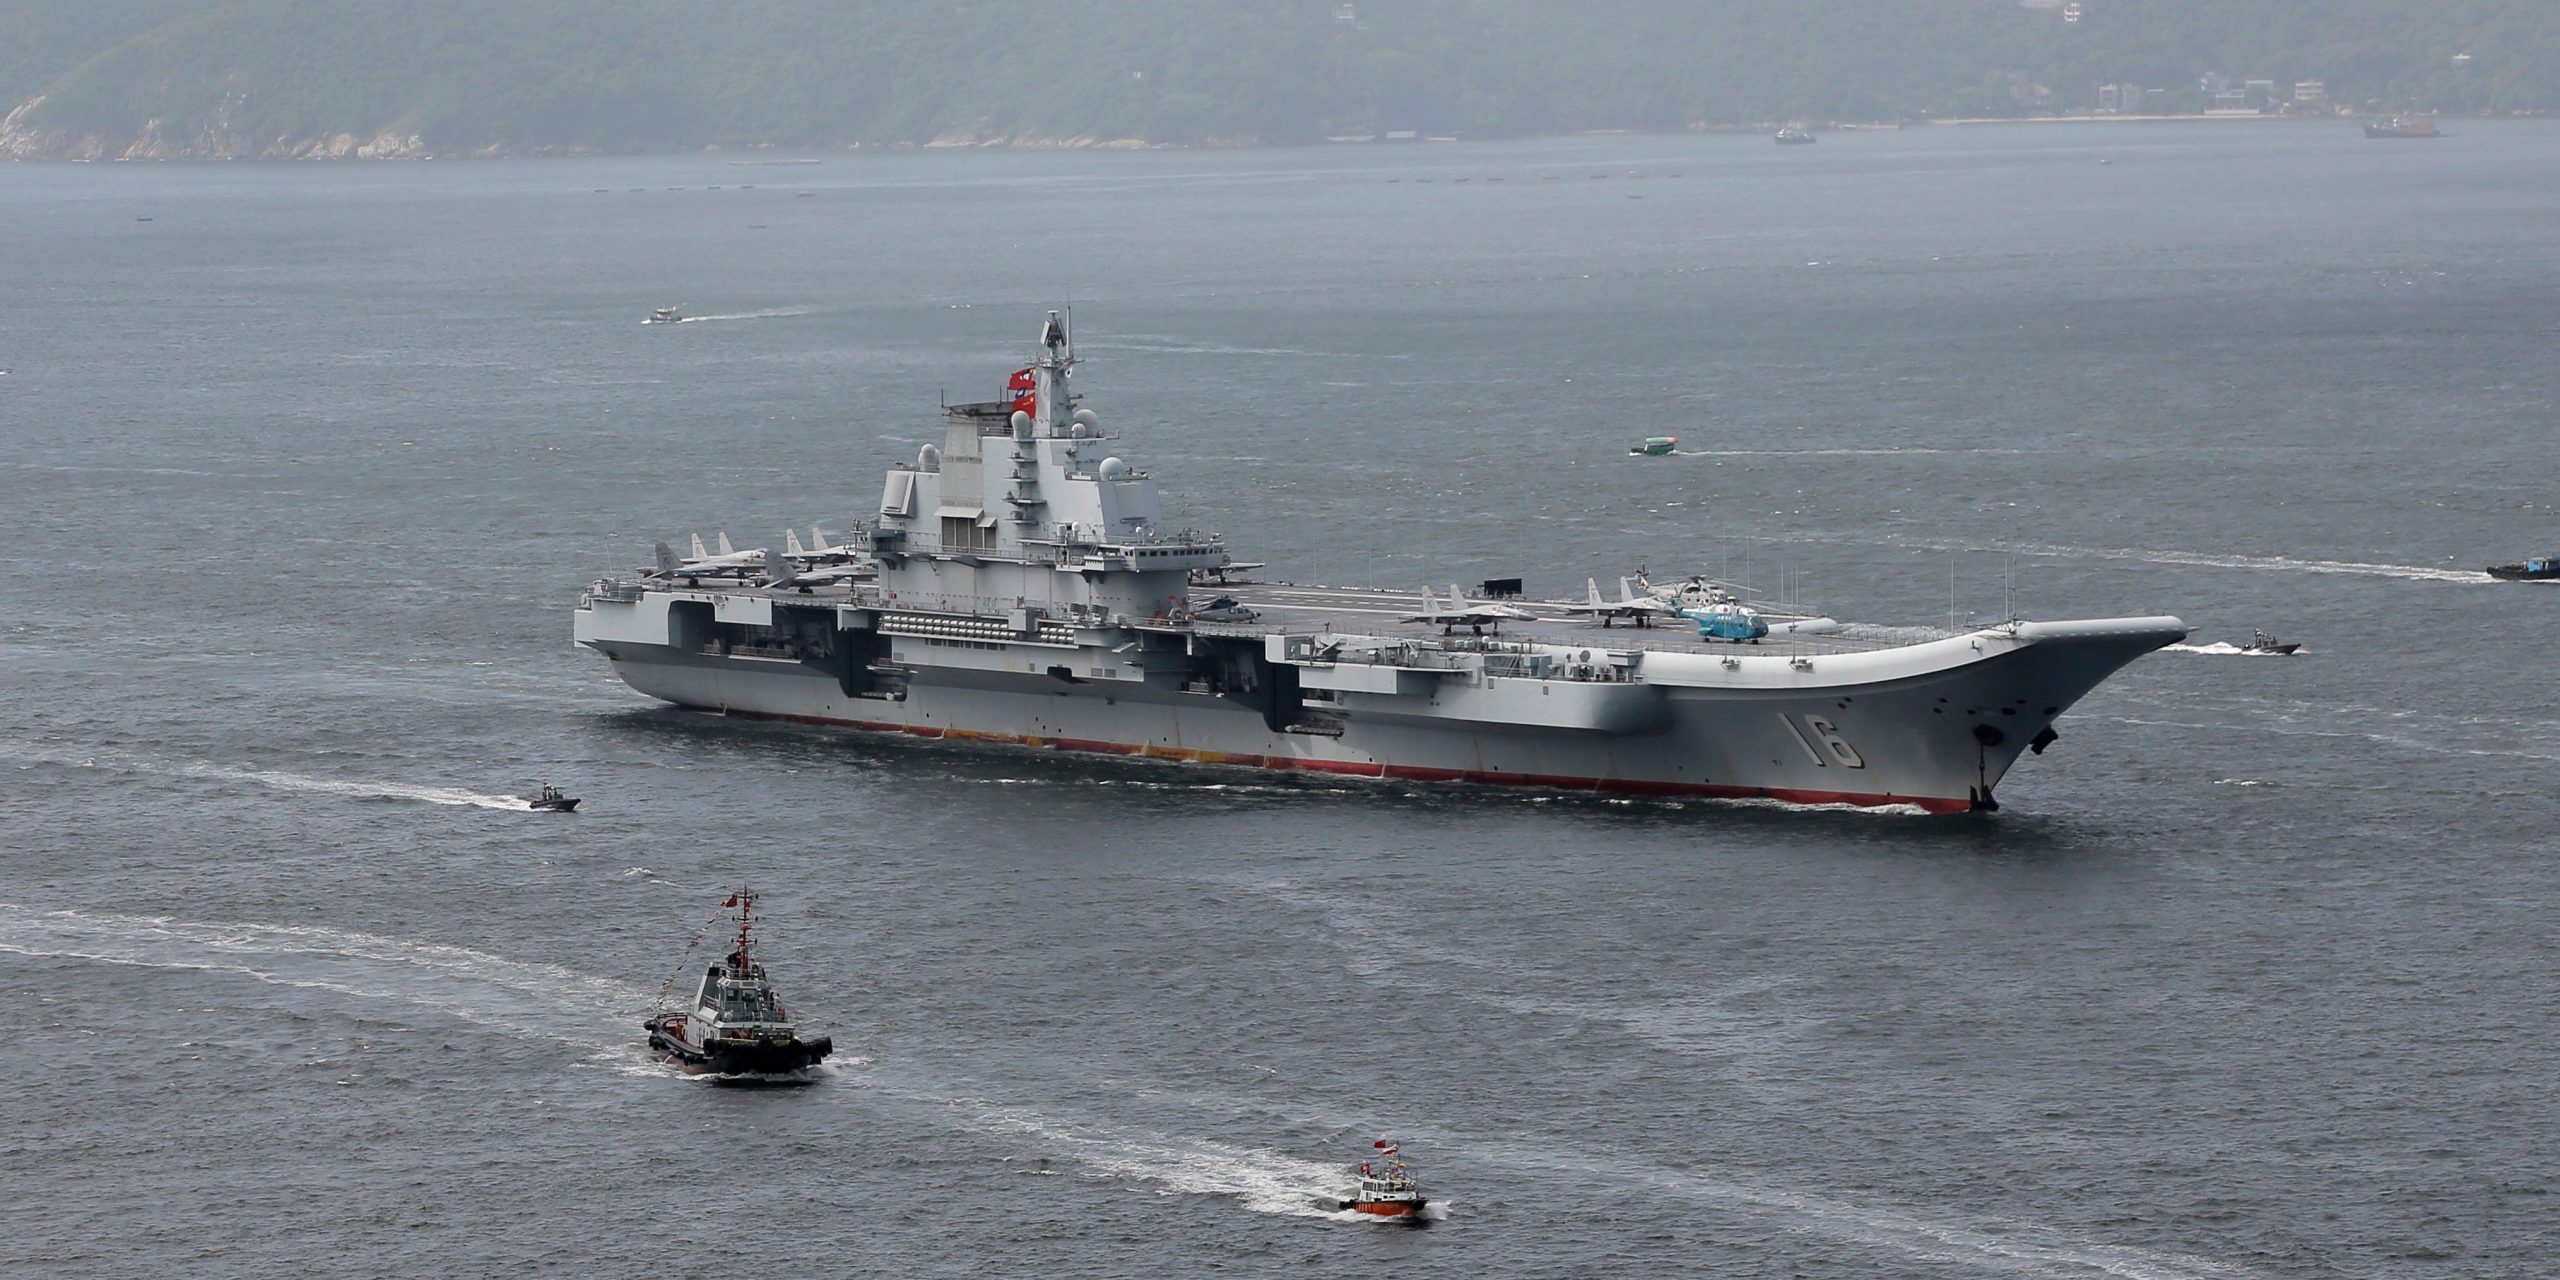 La prima portaerei cinese ha potenziato la sua capacità di combattimento